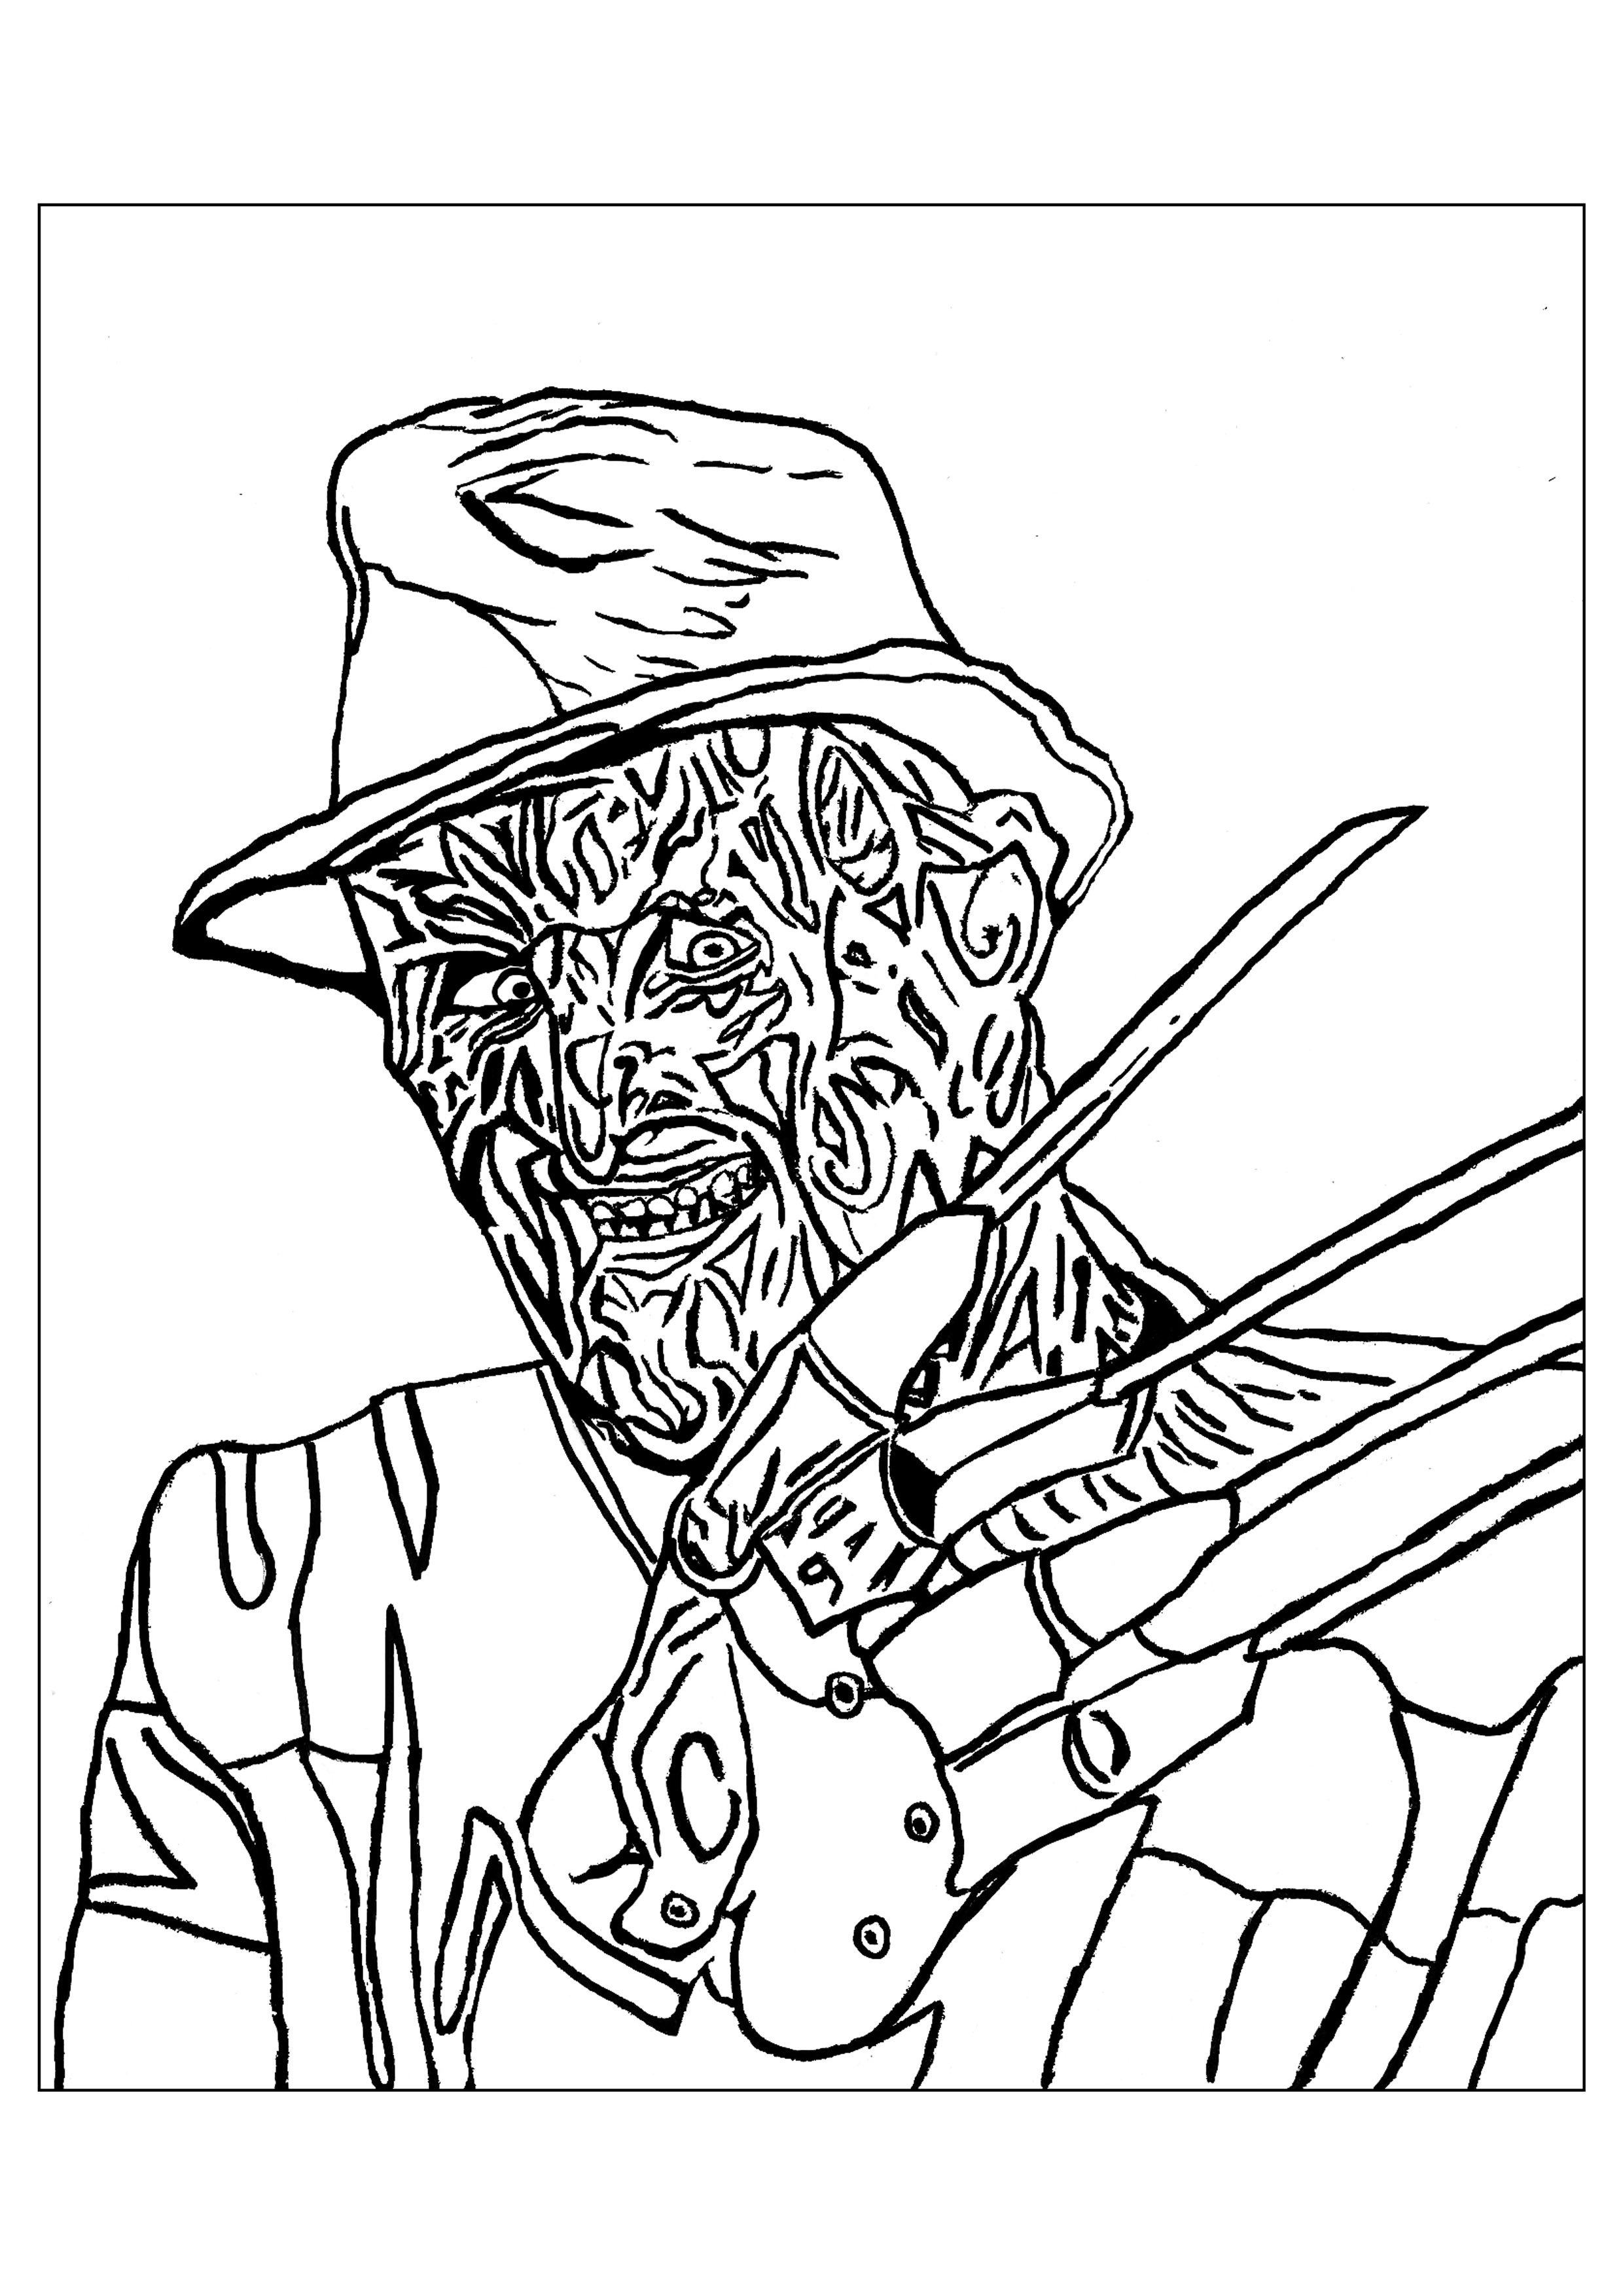 Una spaventosa pagina da colorare di Freddy Krueger, perfetta per Halloween